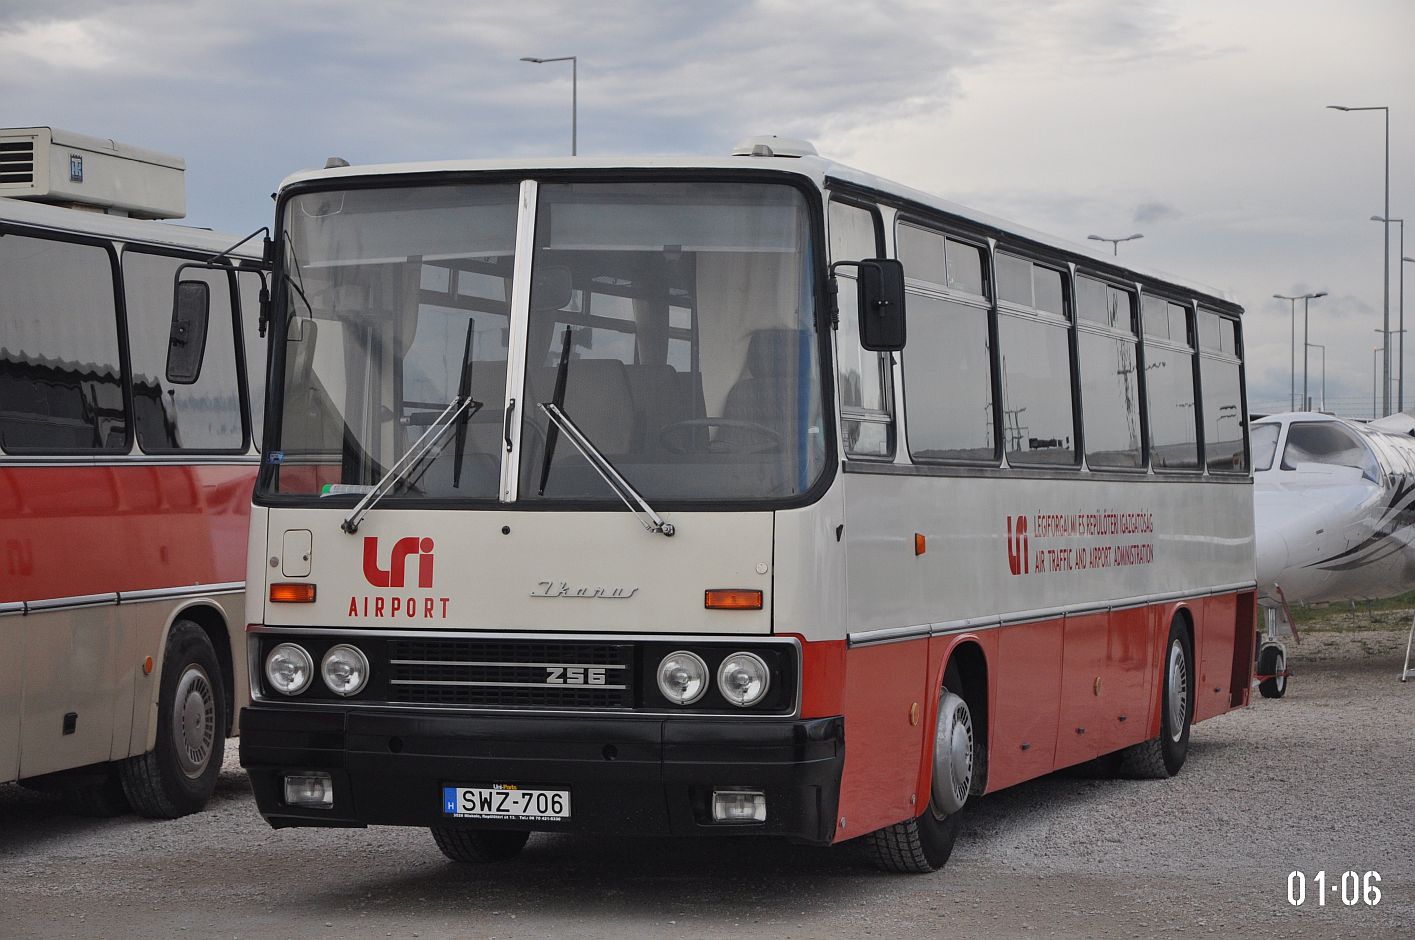 Maďarsko, Ikarus 256.50E č. SWZ-706; Maďarsko — IV. Ikarus Találkozó, Aeropark (2022)